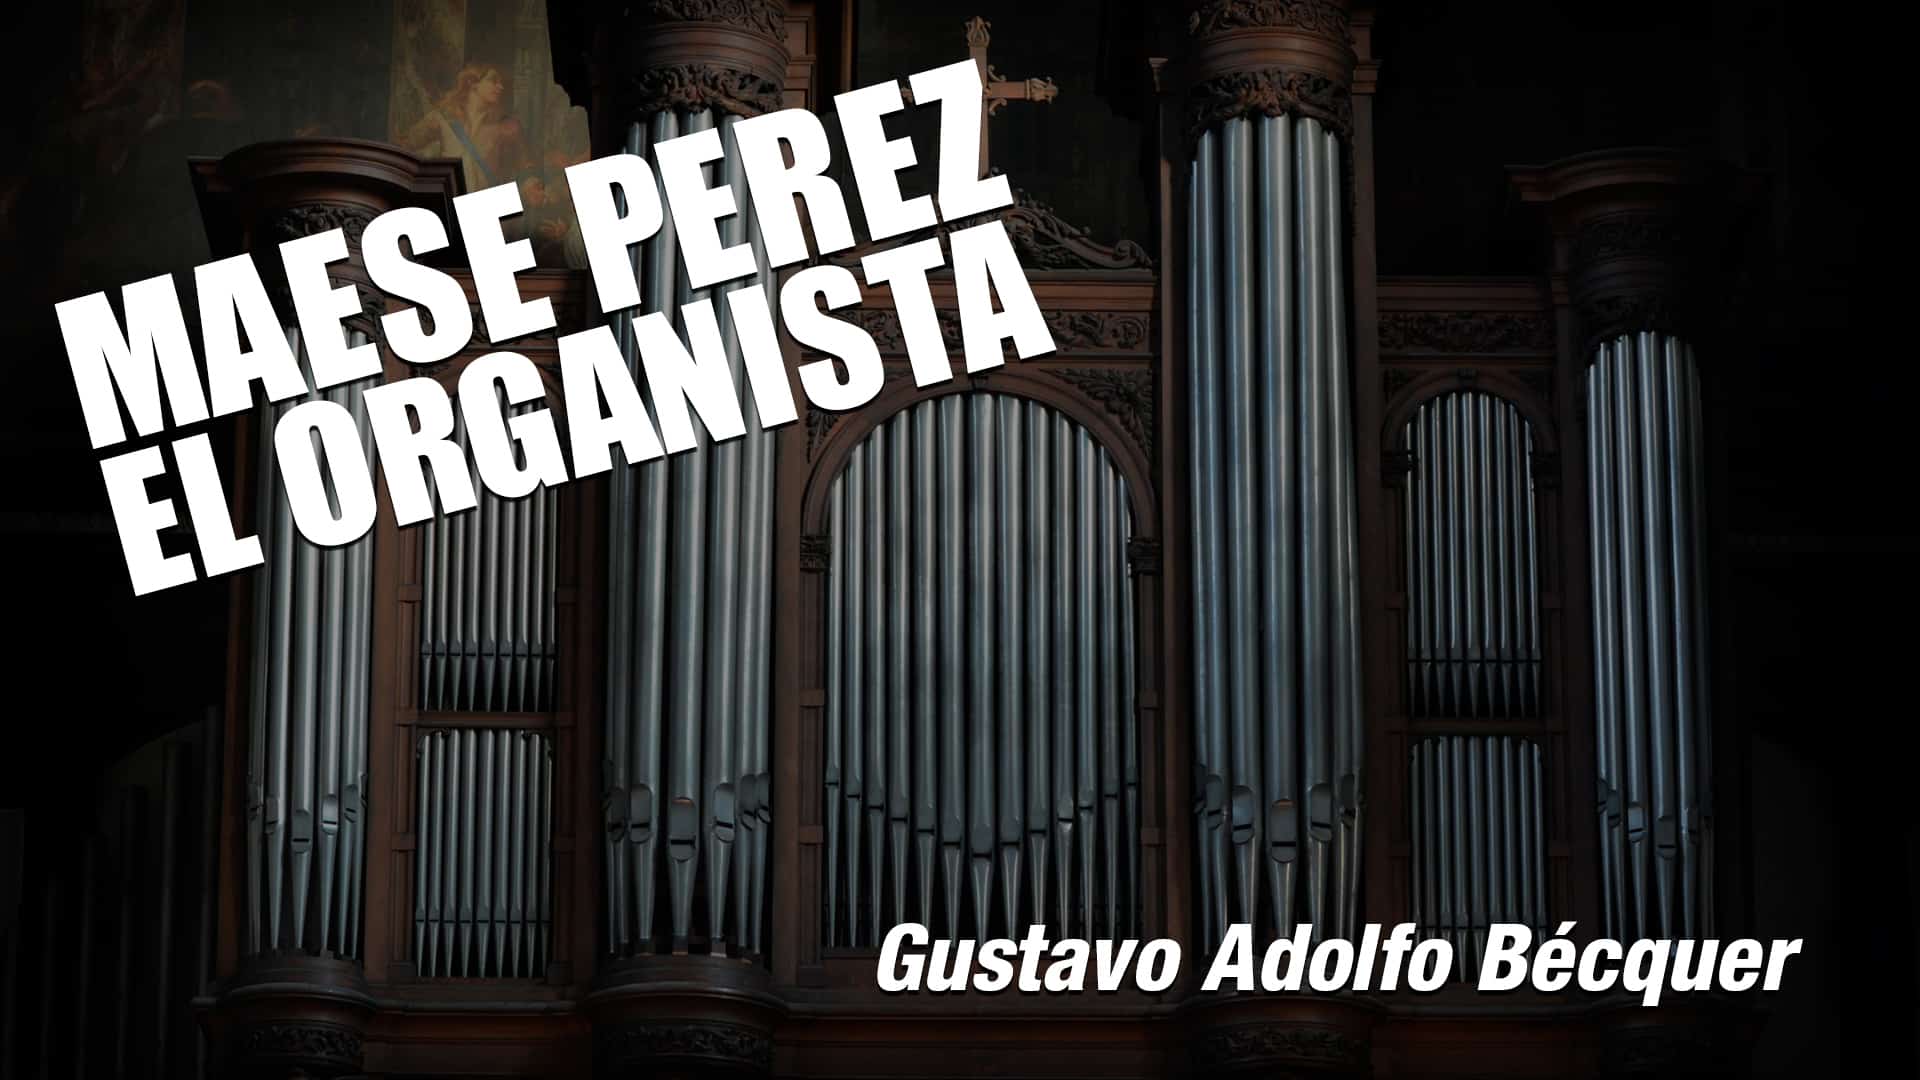 Maese Pérez el Organista de Gustavo Adolfo Becquer